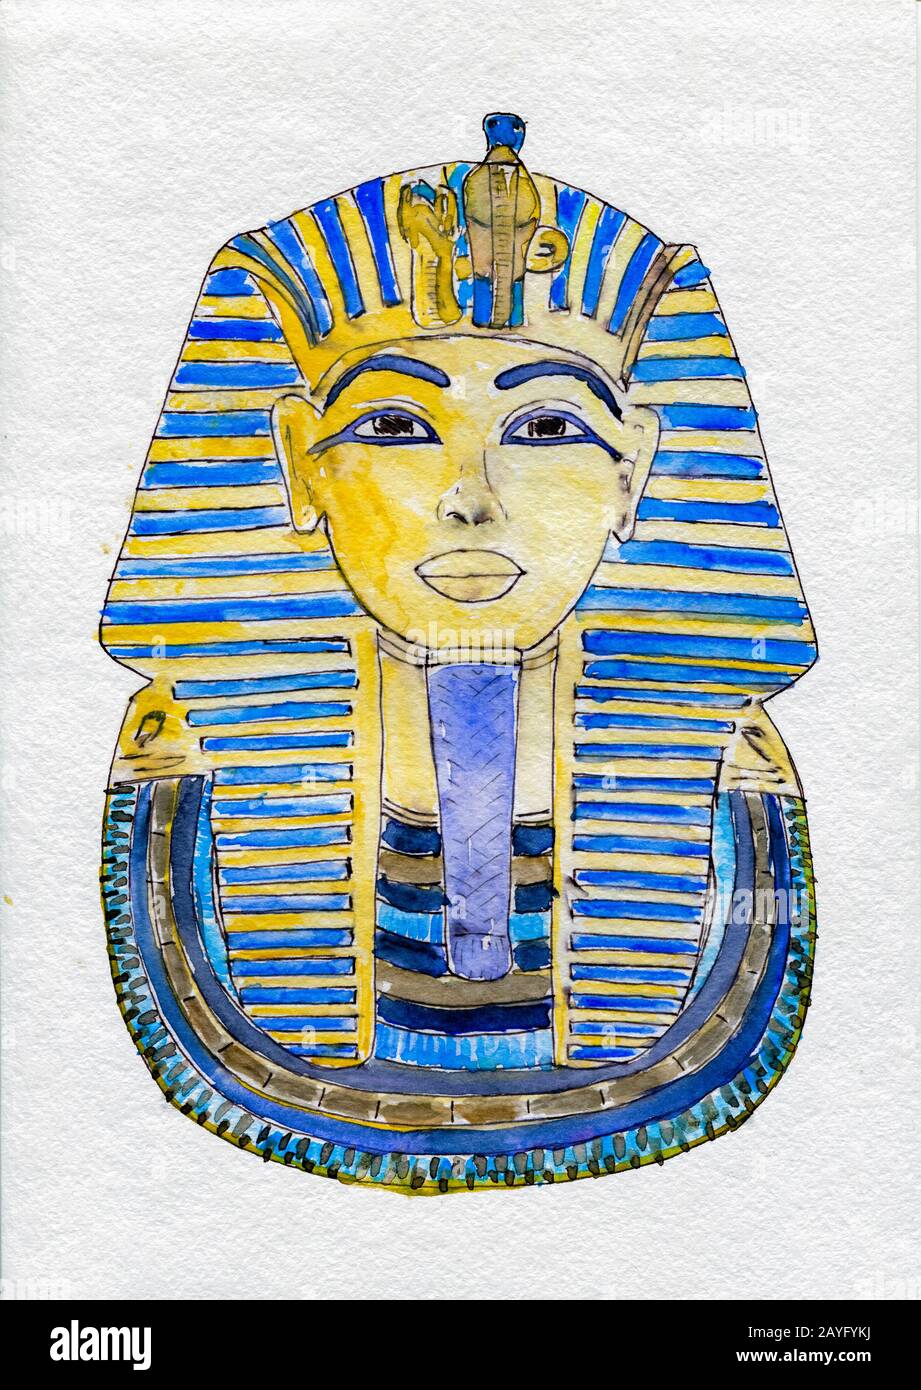 Goldene Maske der ägyptischen pharaonen-hand gezeichnet. Tutanchamun Pharao  des Alten Ägyptens Aquarell Illustration Stockfotografie - Alamy